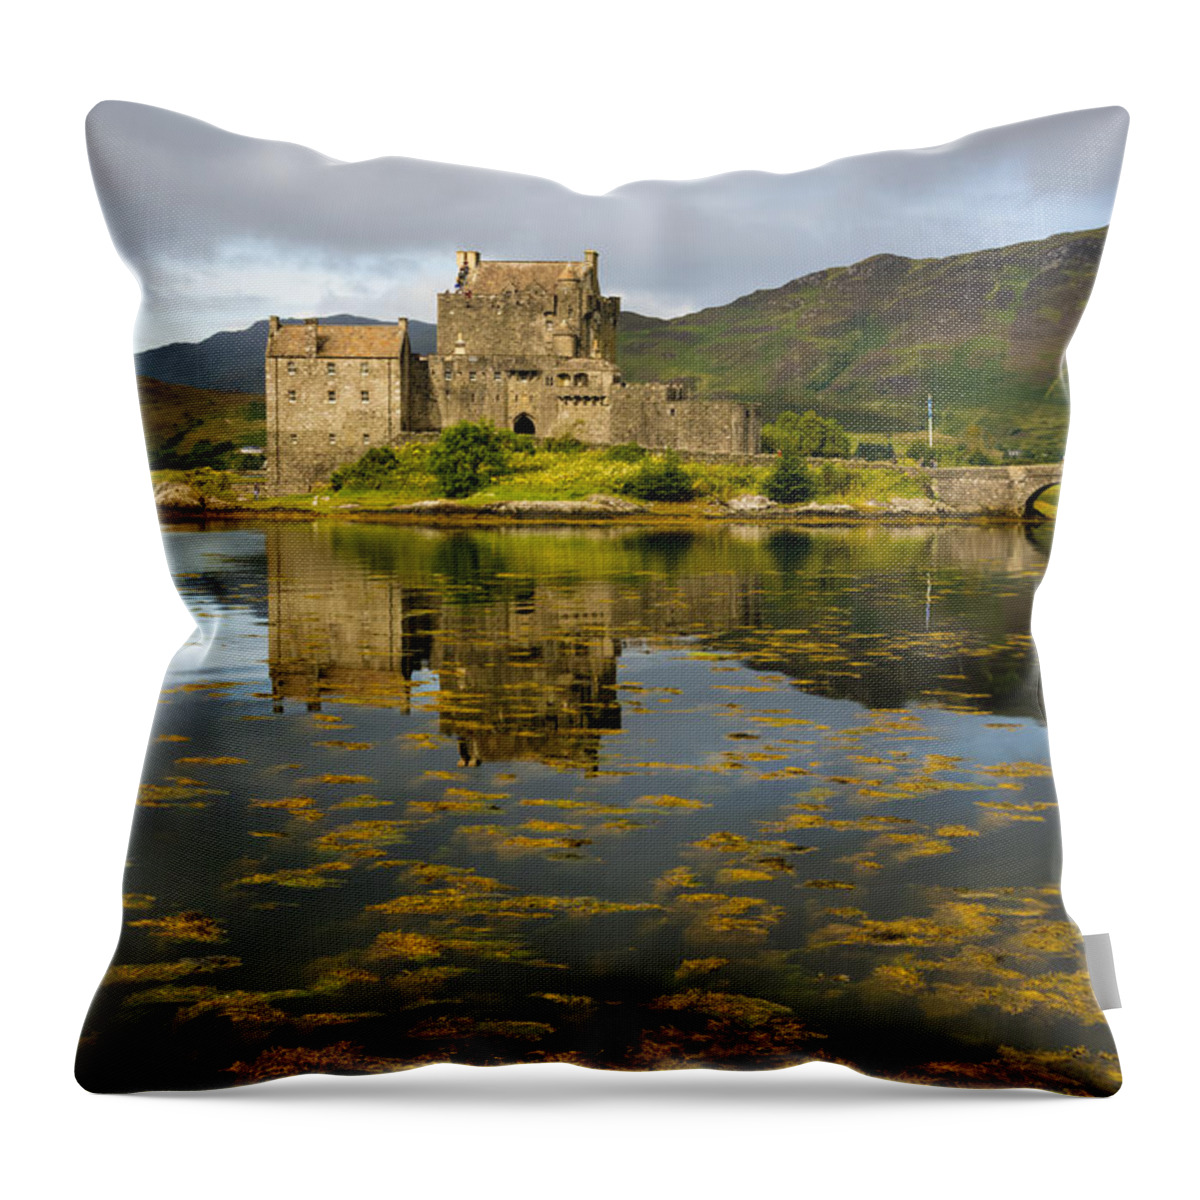 Scotland Throw Pillow featuring the photograph Eilean Donan Castle 2nd September 2015 by John Paul Cullen